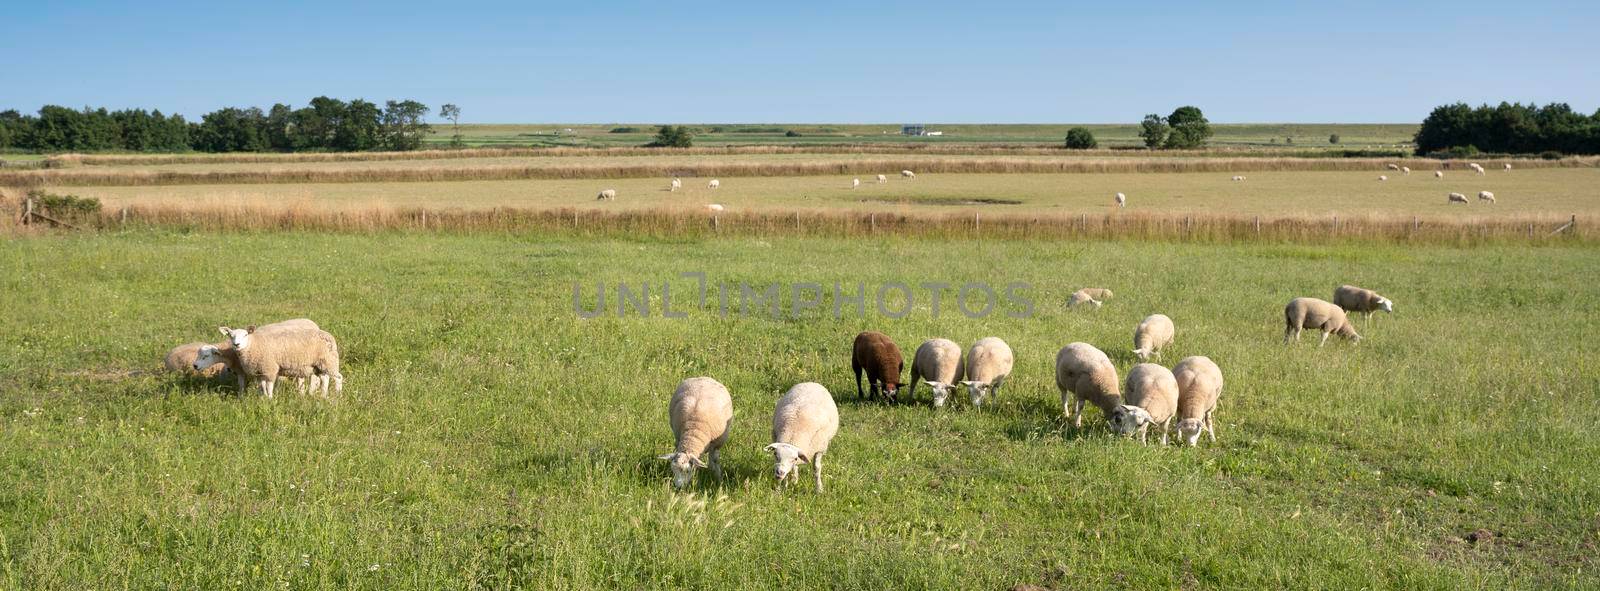 sheep in green meadow under blue sky on dutch island of texel in summer by ahavelaar